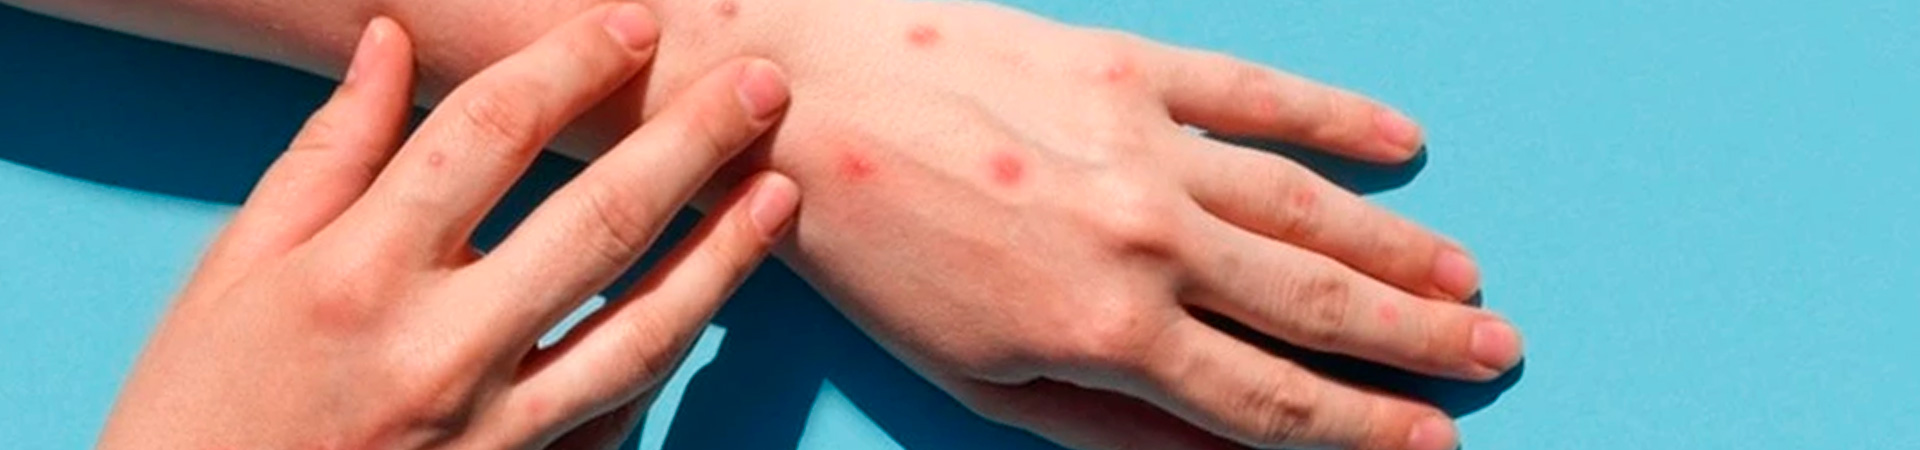 A imagem mostra uma mão com aparecem lesões avermelhadas na pele.